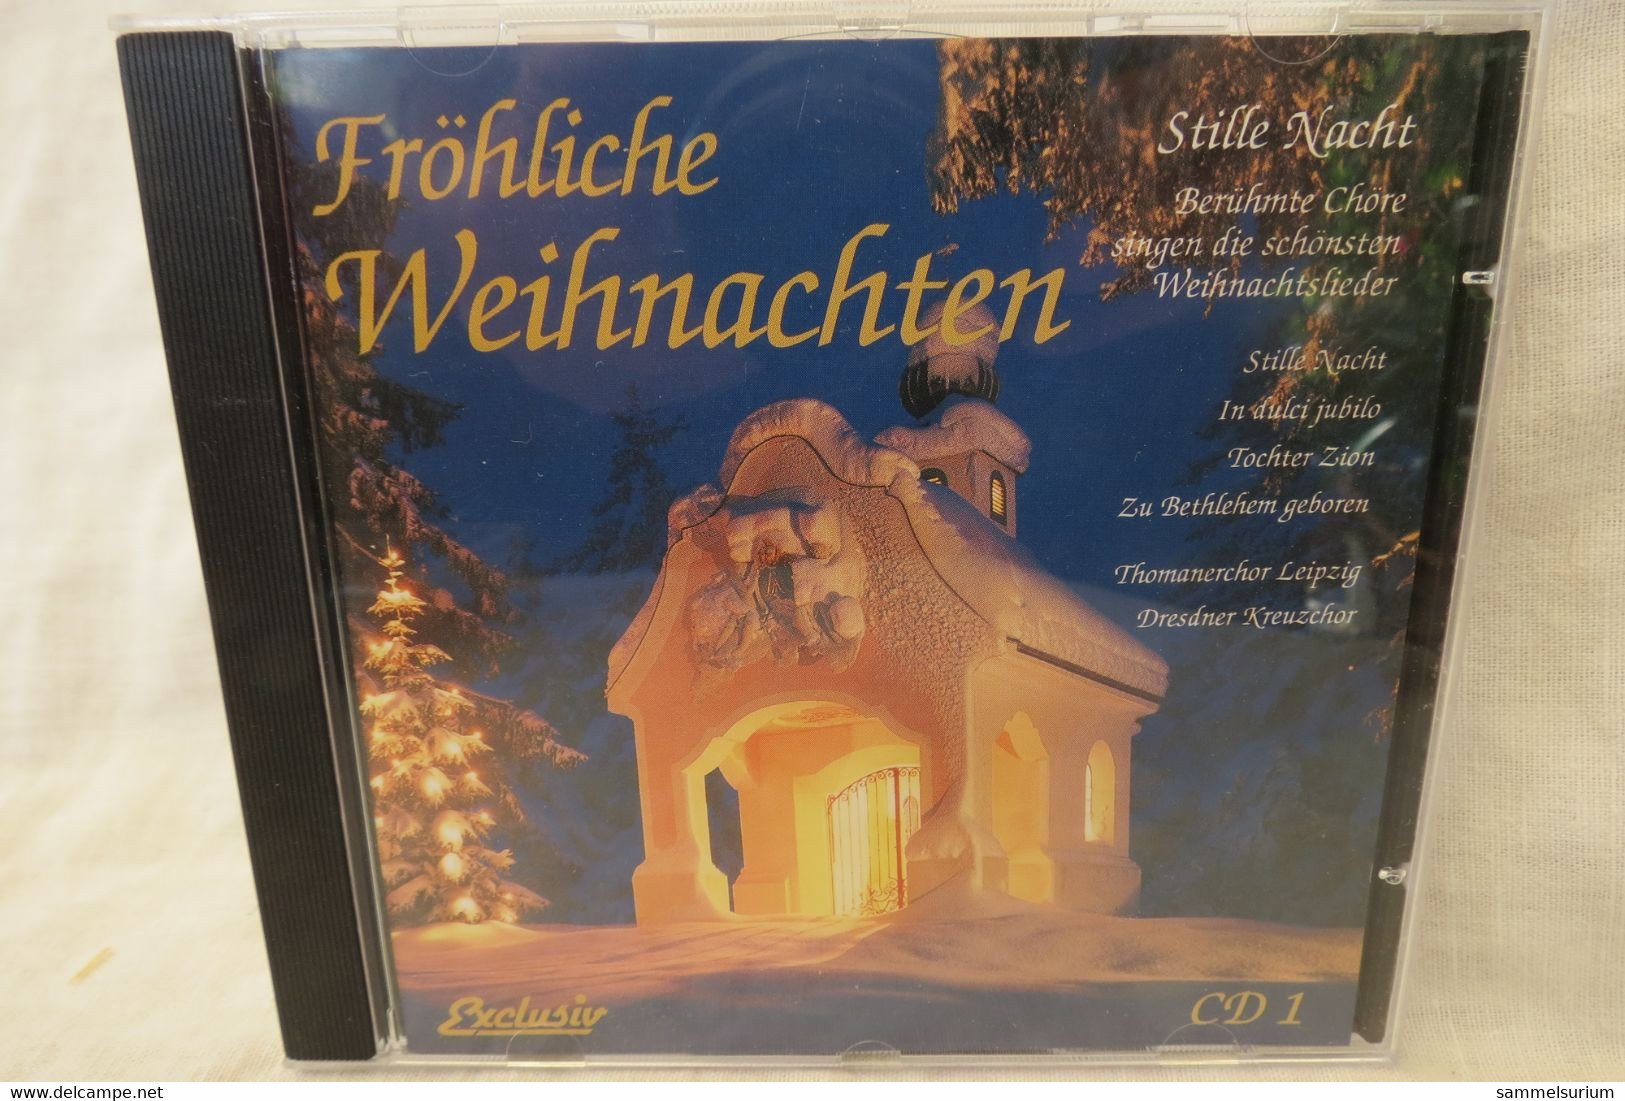 4 CDs "Fröhliche Weihnachten" Berühmte Chöre, Internationale Weihnachtslieder, Gitarrenmusik, Stars Singen Weihnachtslie - Canzoni Di Natale